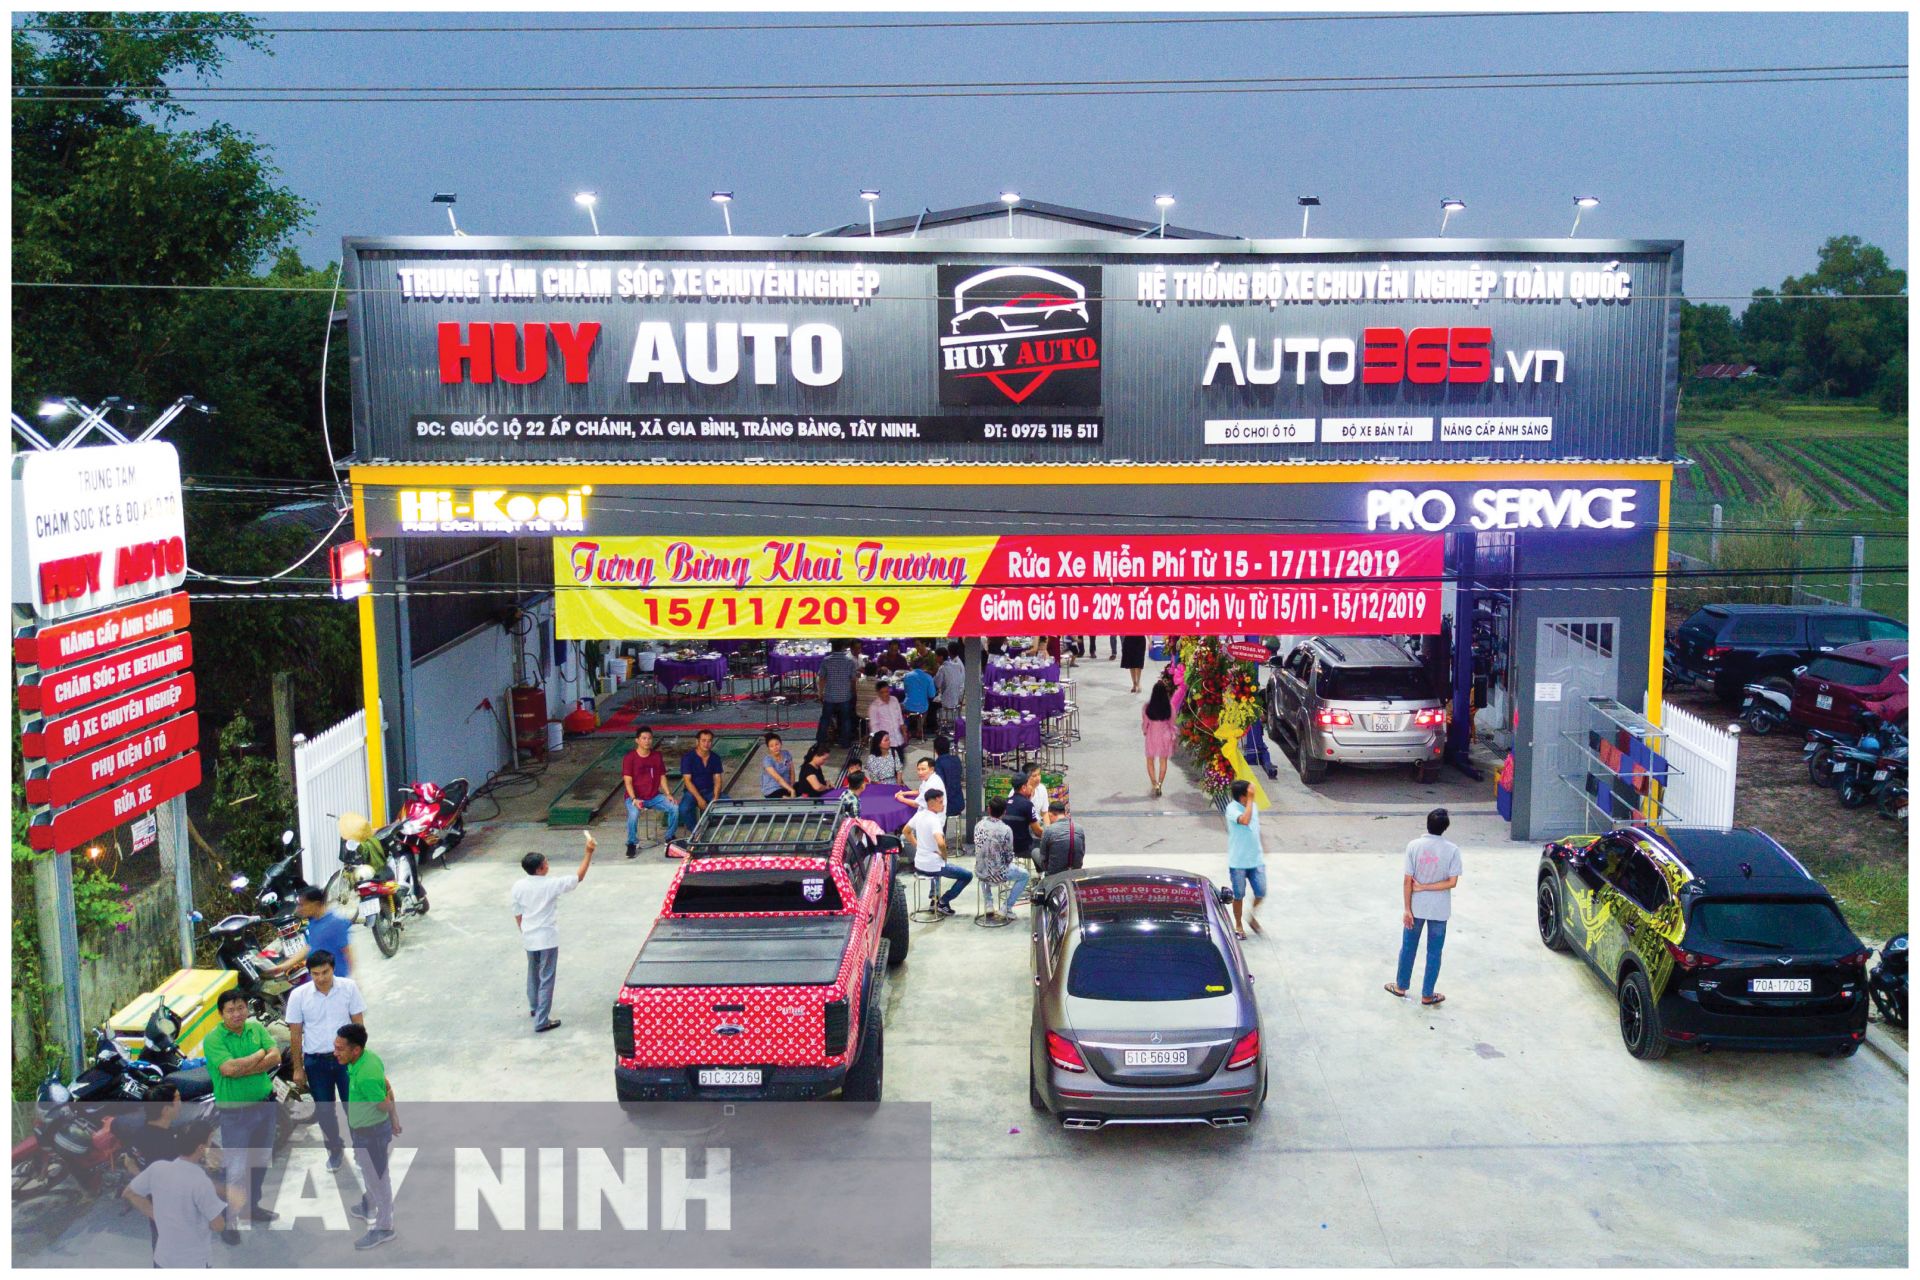 Auto365 Tây Ninh – Hệ Thống Auto365.Vn Tại Tây Ninh